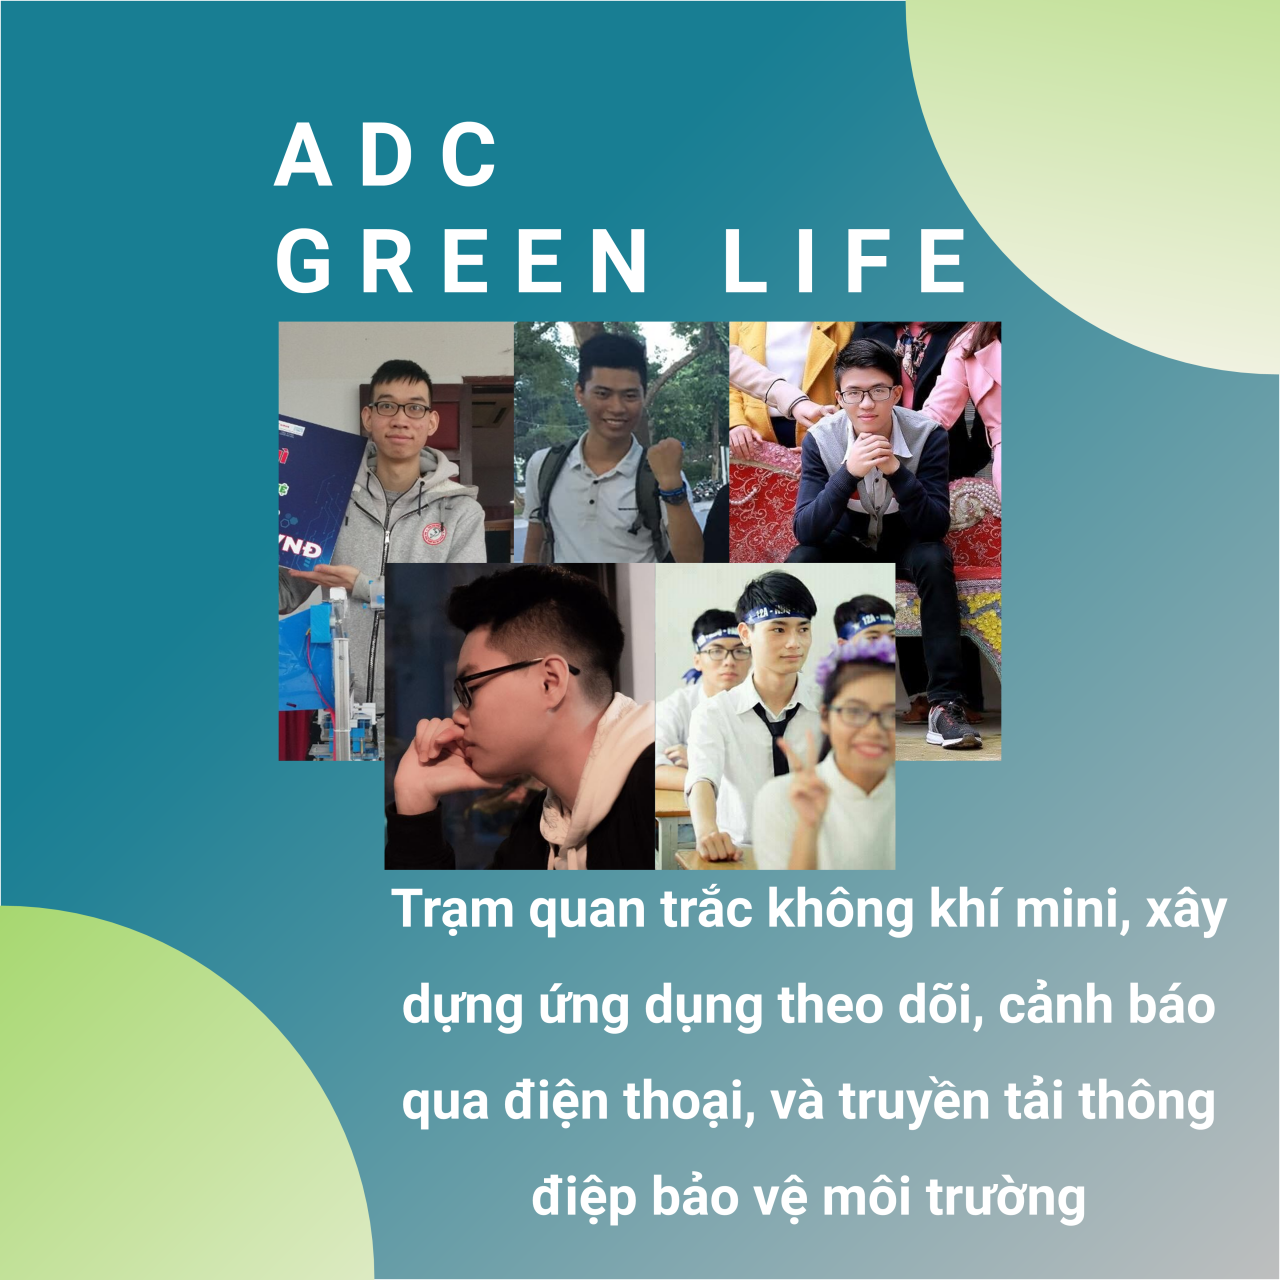 Nhóm ADC Green Life - Trạm quan trắc không khí mini EcoGreen